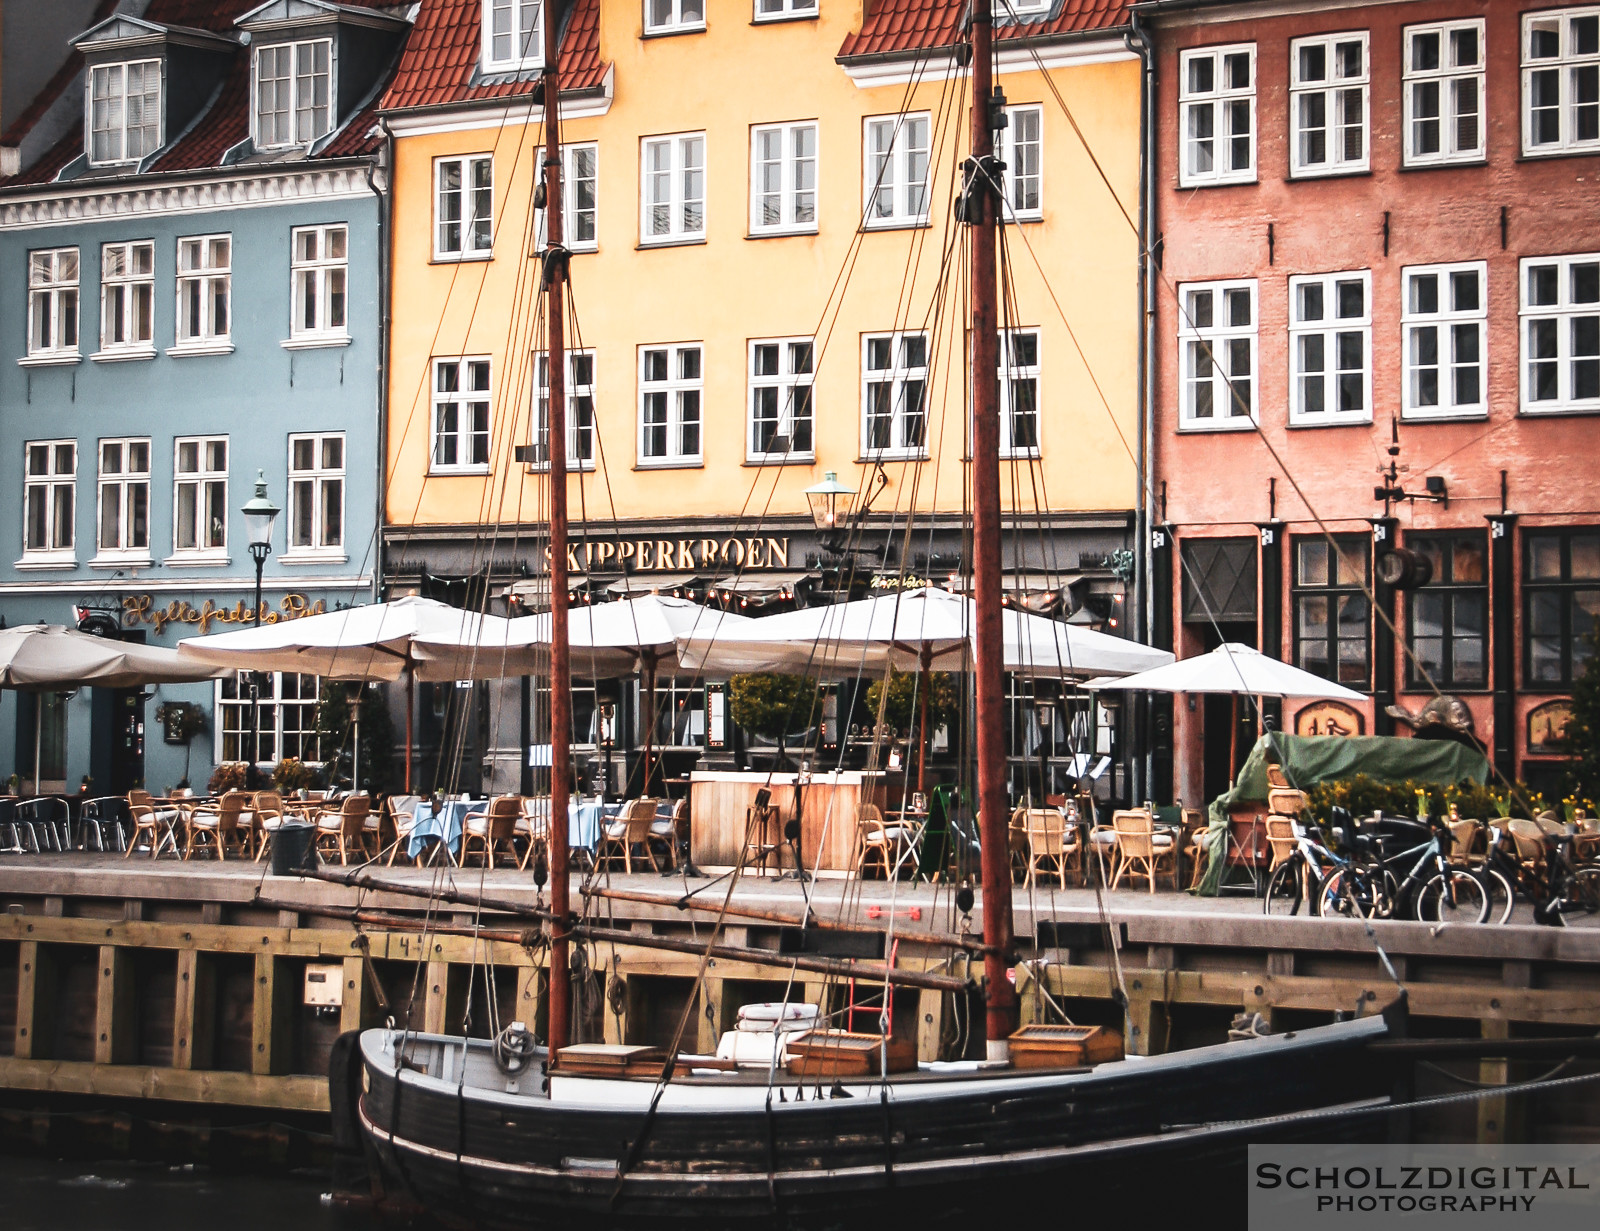 Kopenhagen, Dänemark, Fotografie, Städtereisen, Sightseeing, Scholzdigital